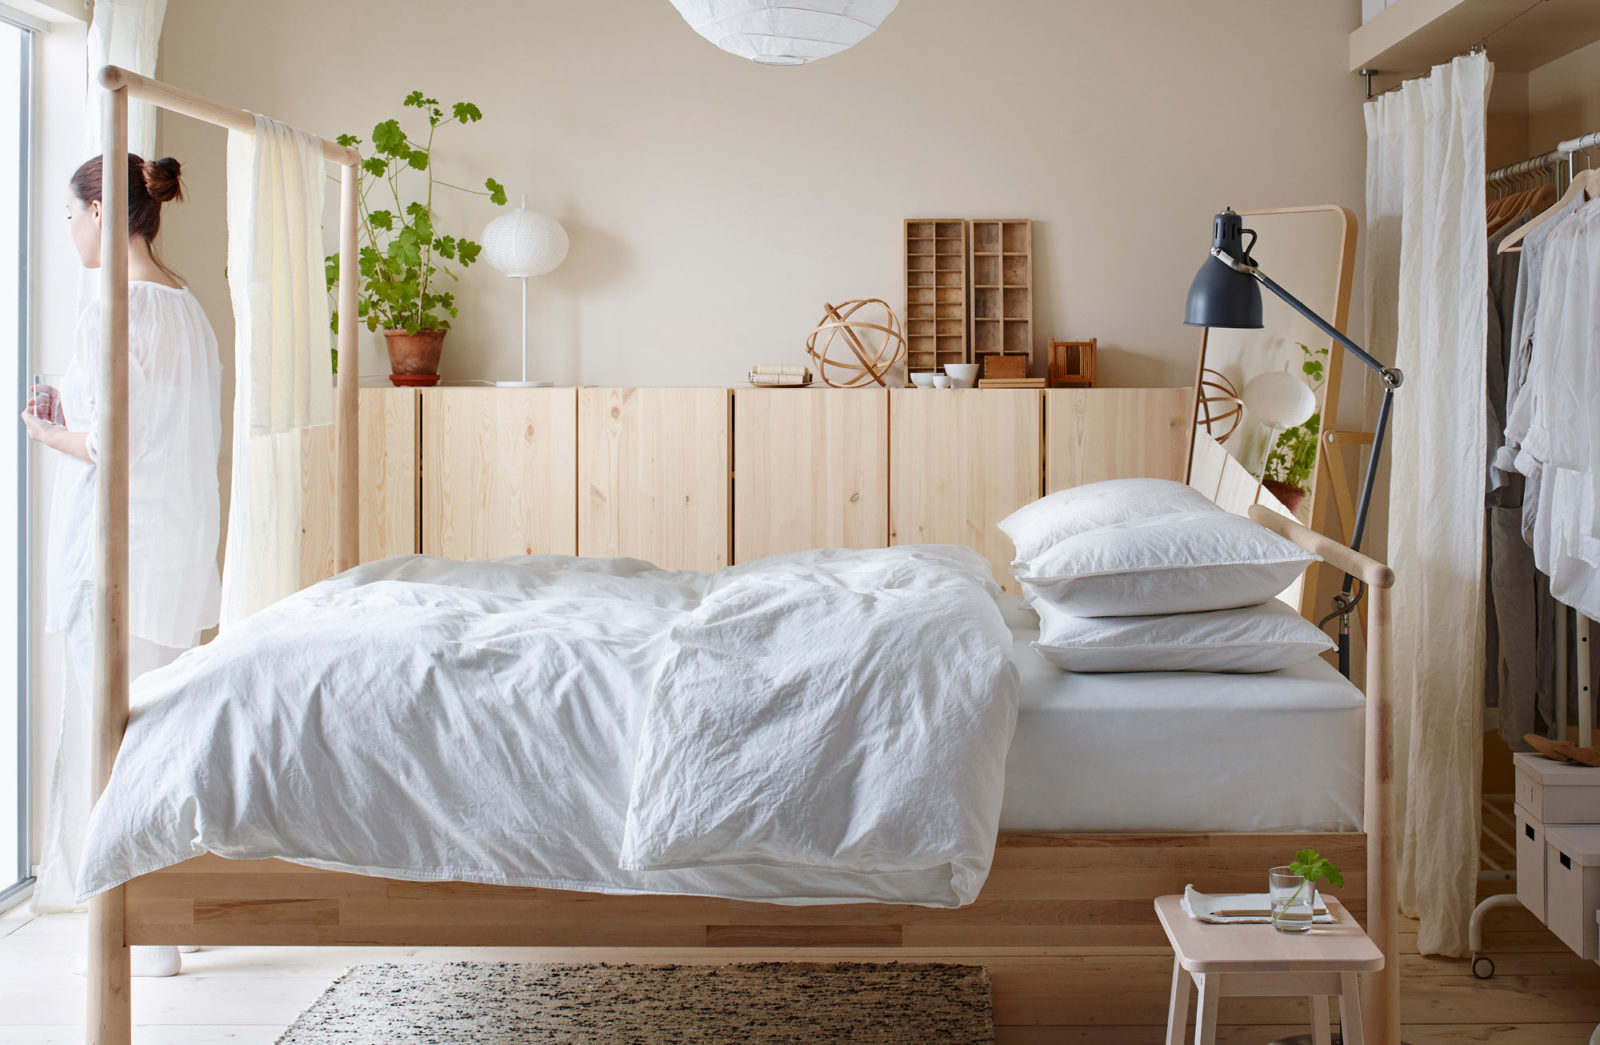 Sovrum i skandinavisk stil, ljusa trämöbler, vitt sänglinne, kvinna står vid sängen med ett glas vatten.